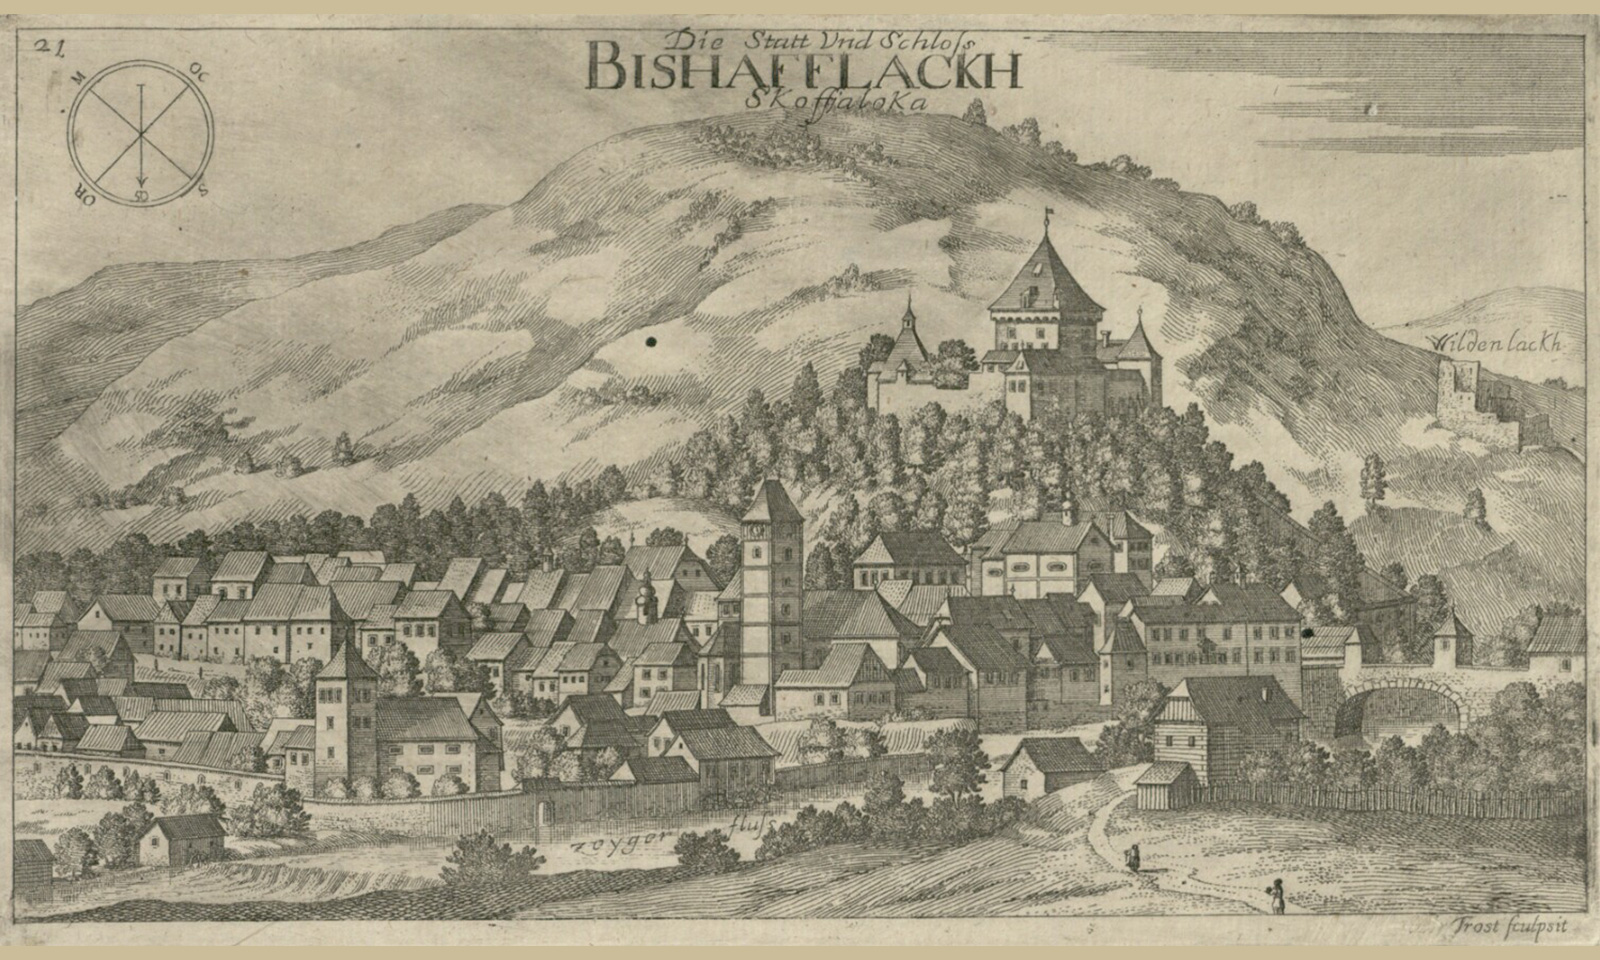 Zgodovina mesta Škofja Loka se pričenja z letom 973